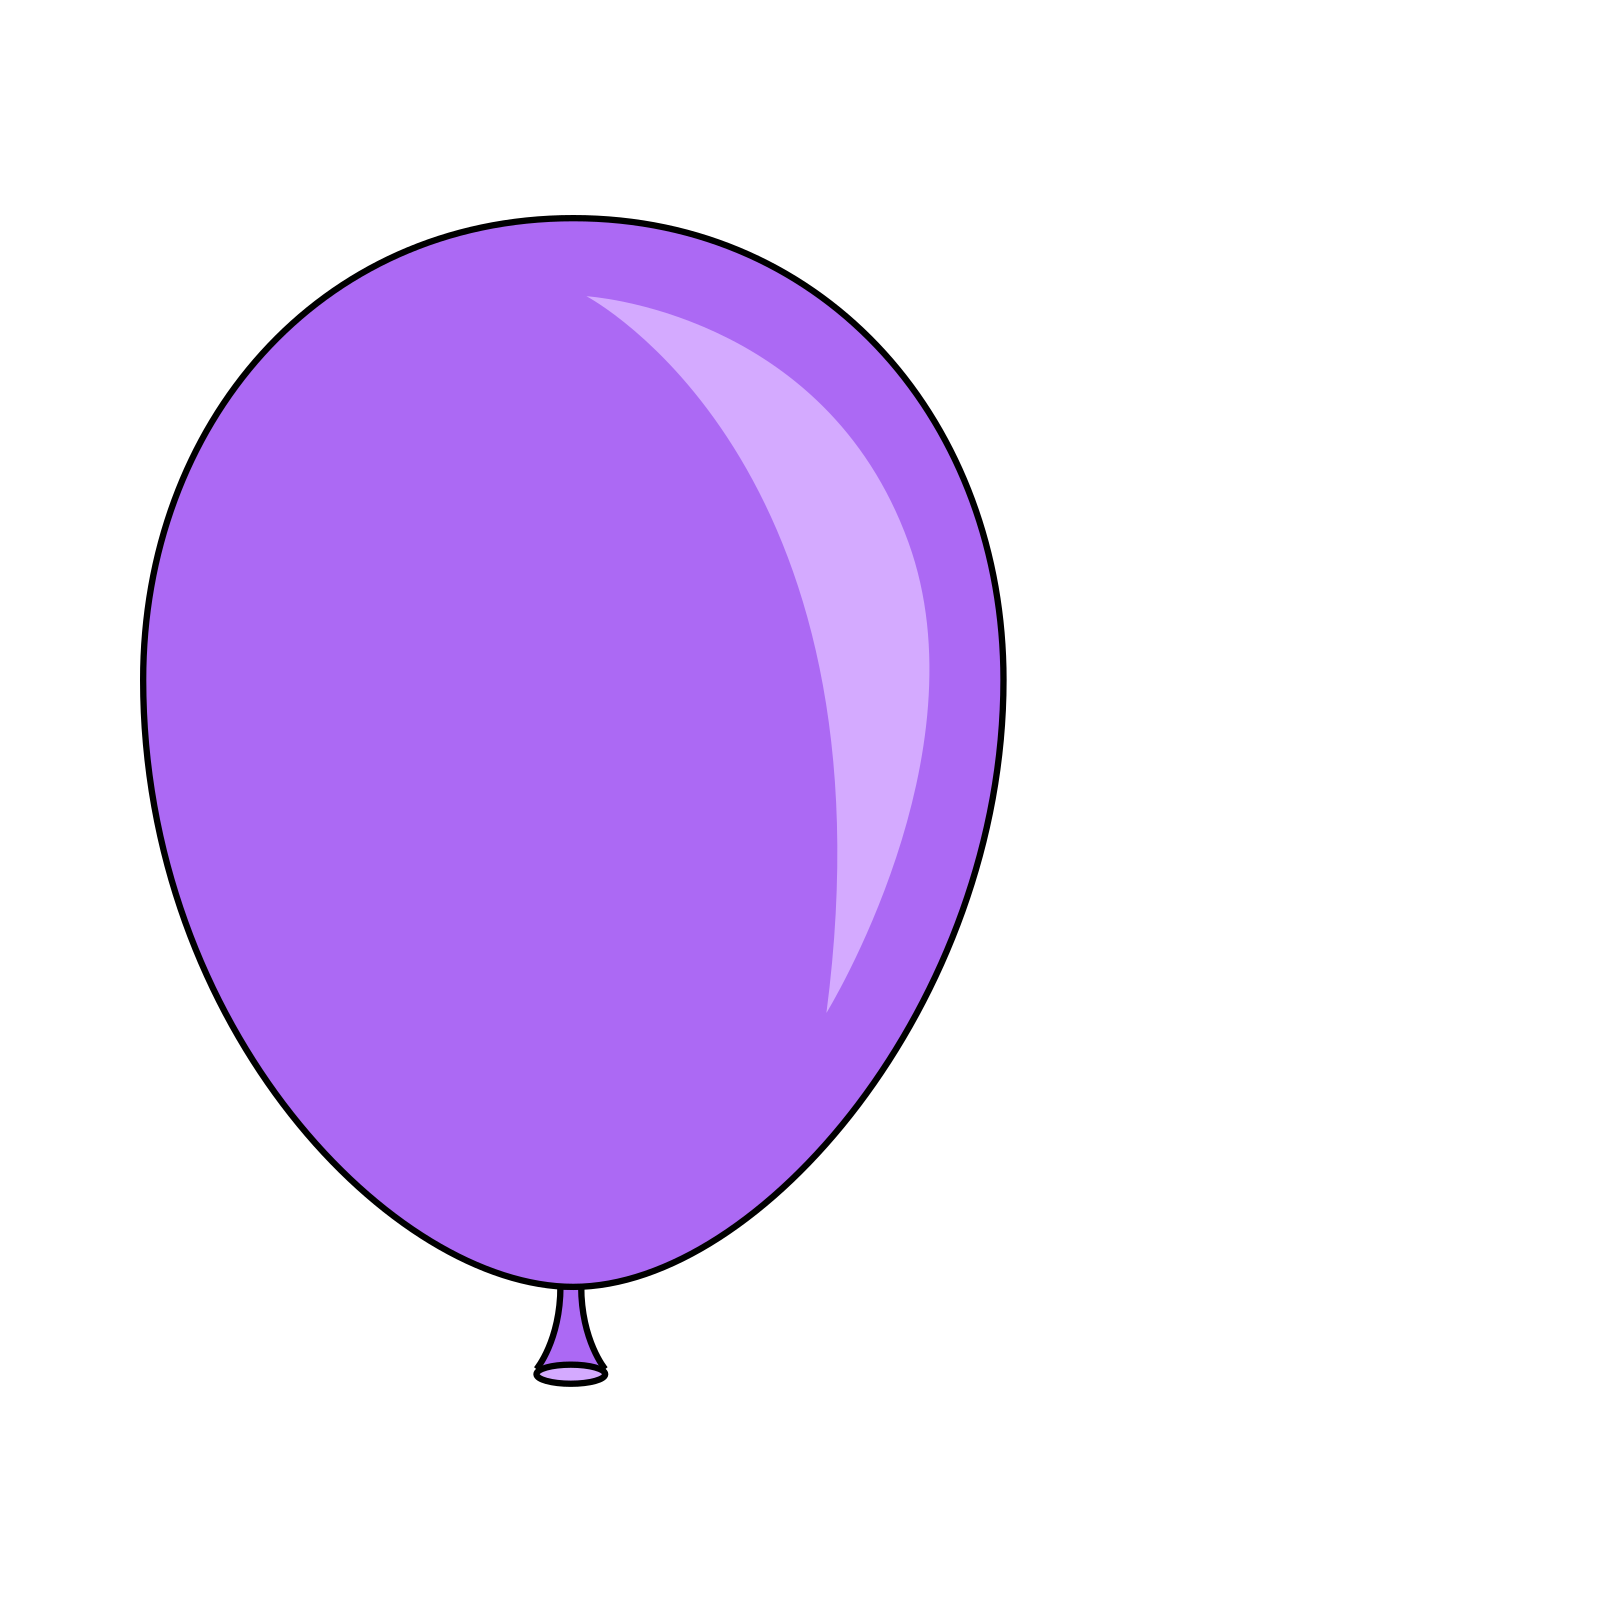 Fond de limage PNG de ballon violet